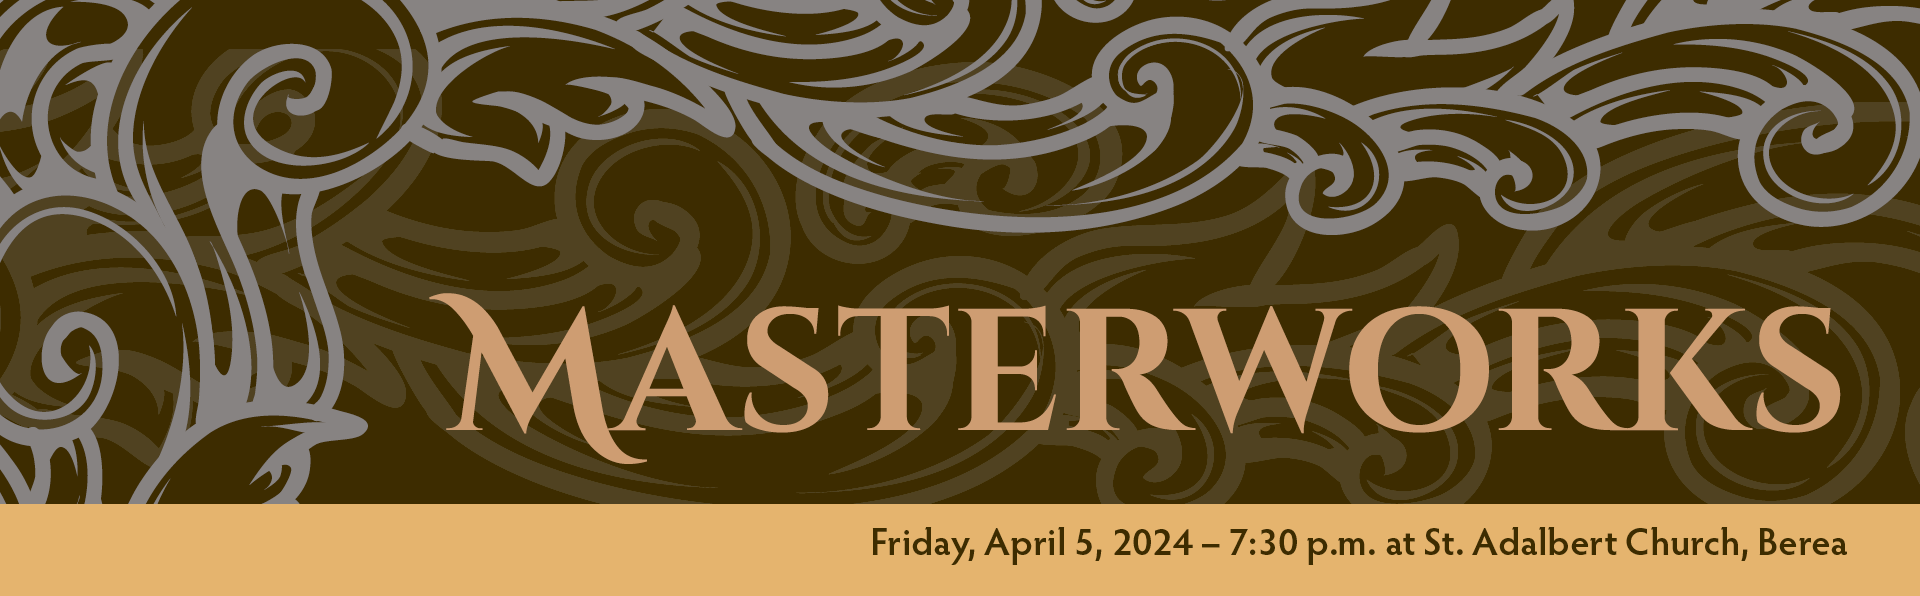 Masterworks, Friday April 5 at 7:30 p.m. at Saint Adalbert Church in Berea Ohio